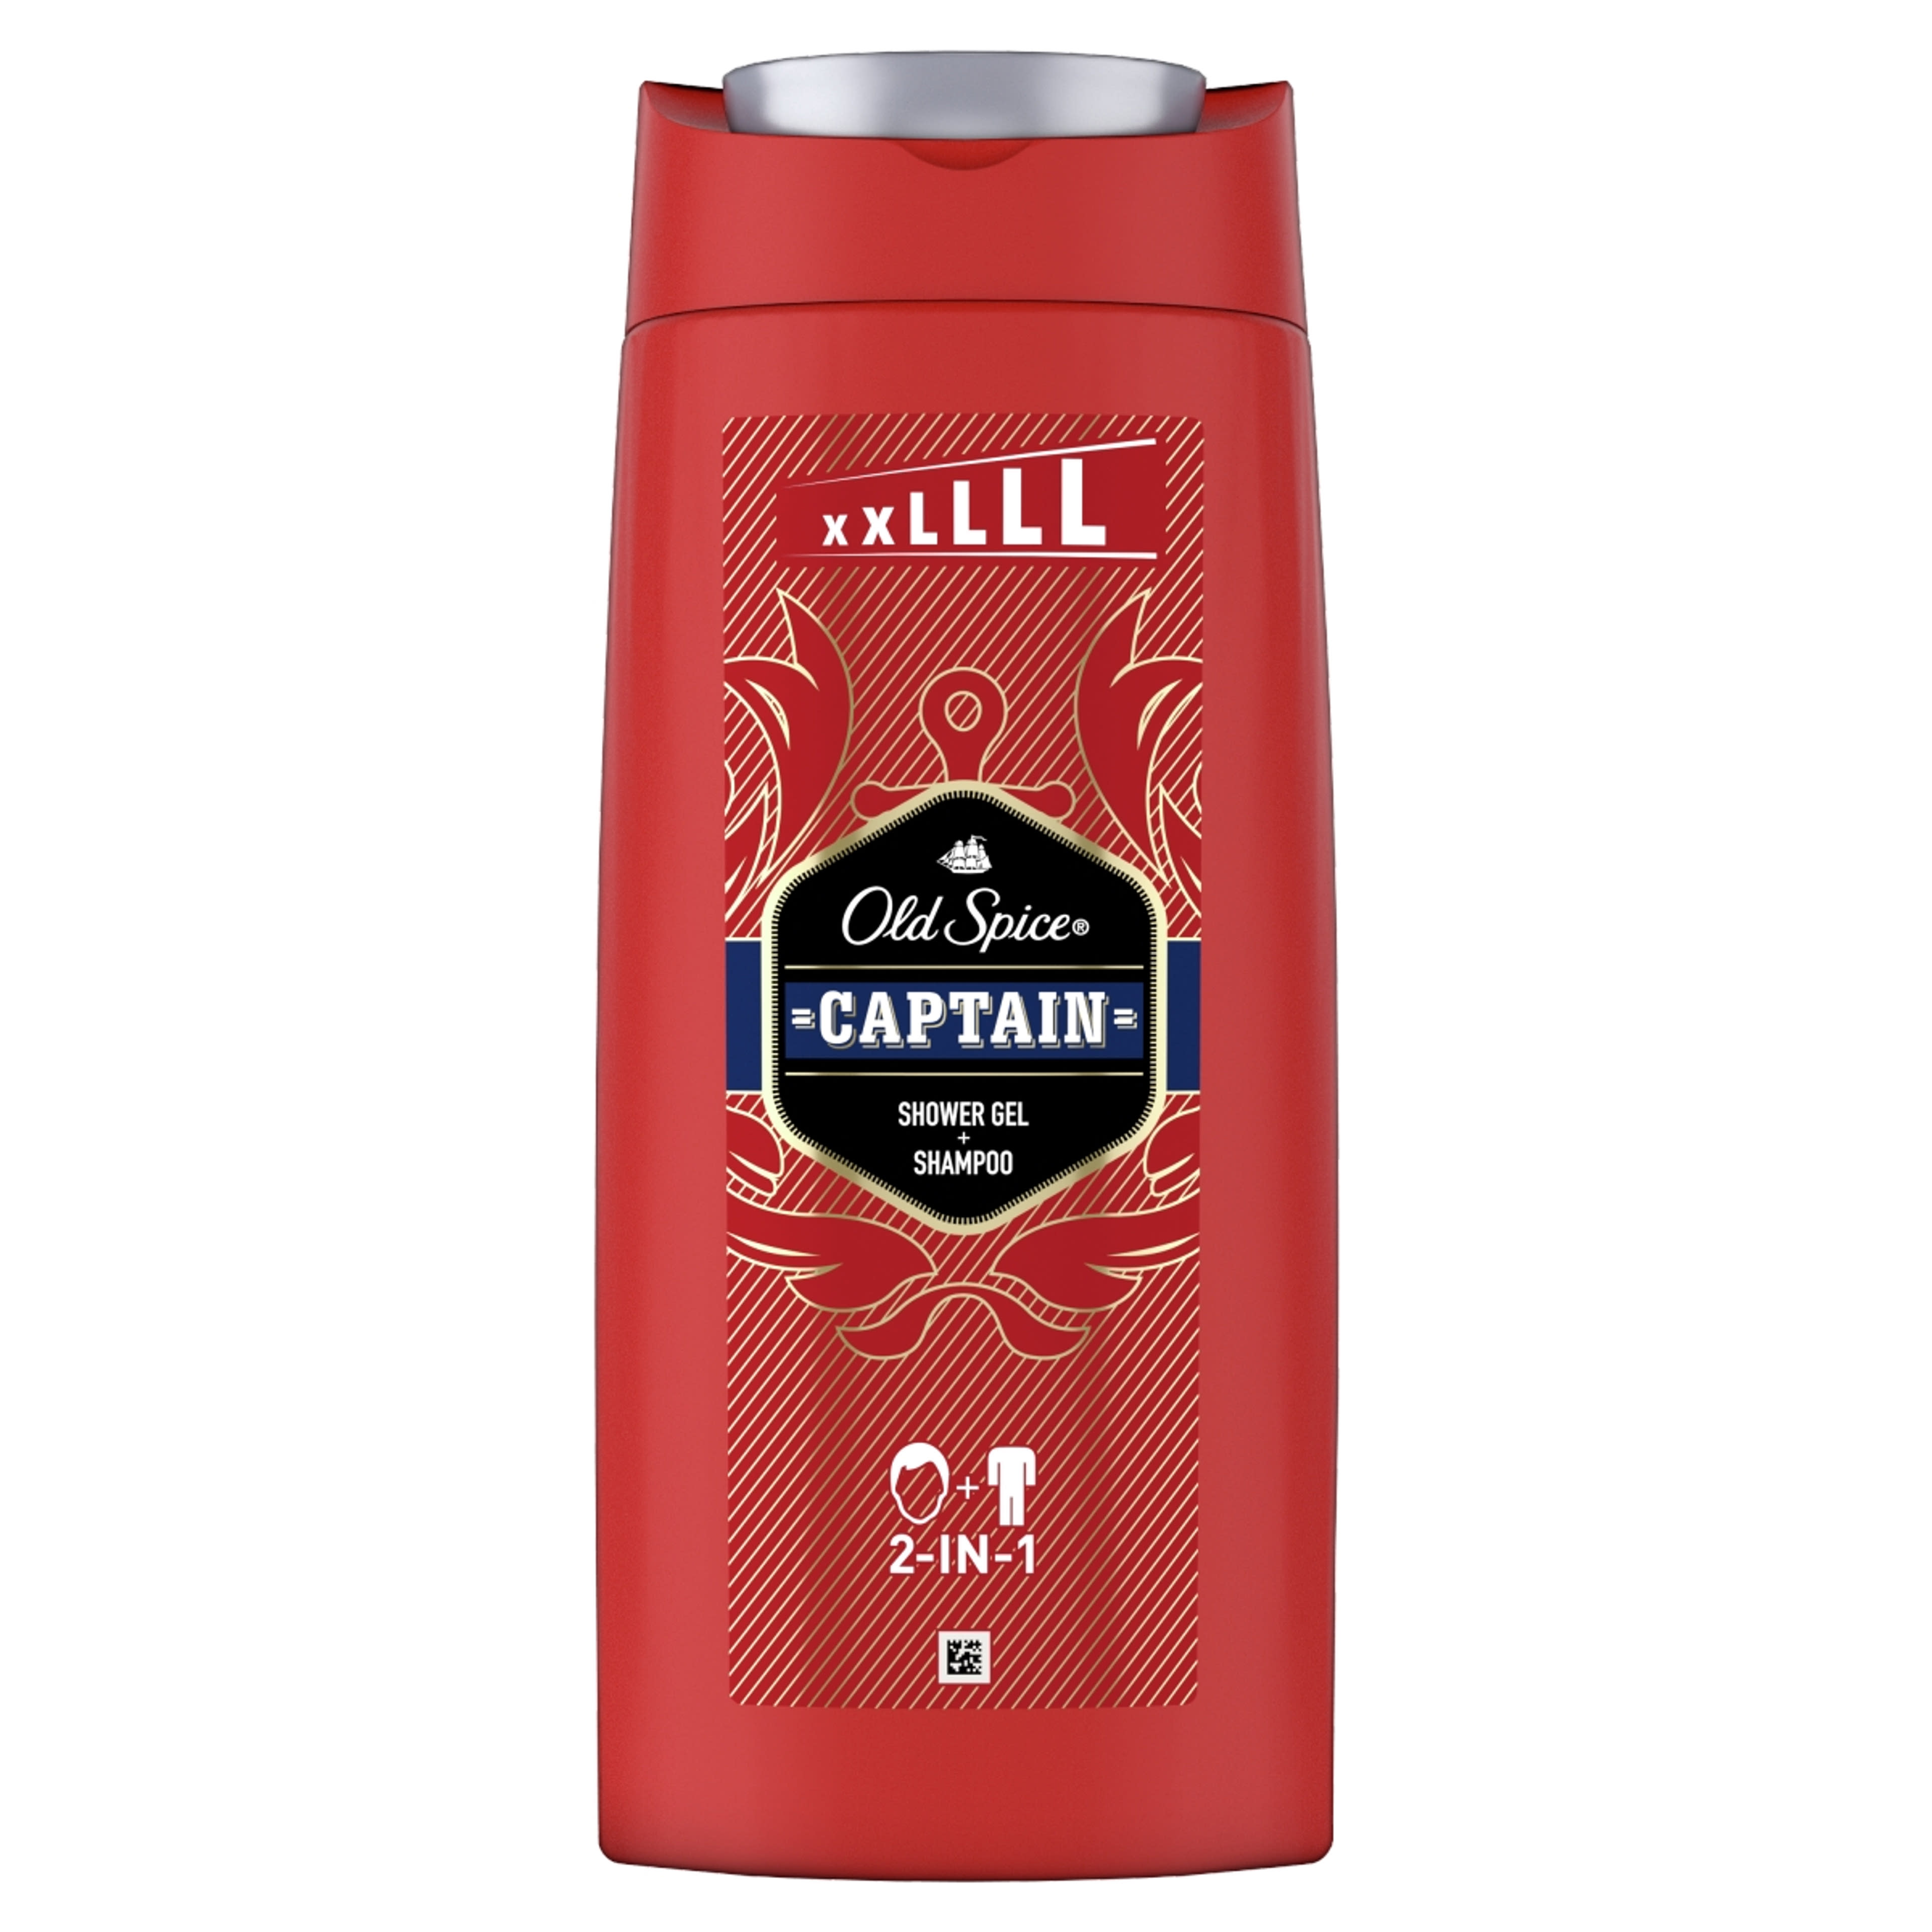 Old Spice Captain tudfürdő - 675 ml